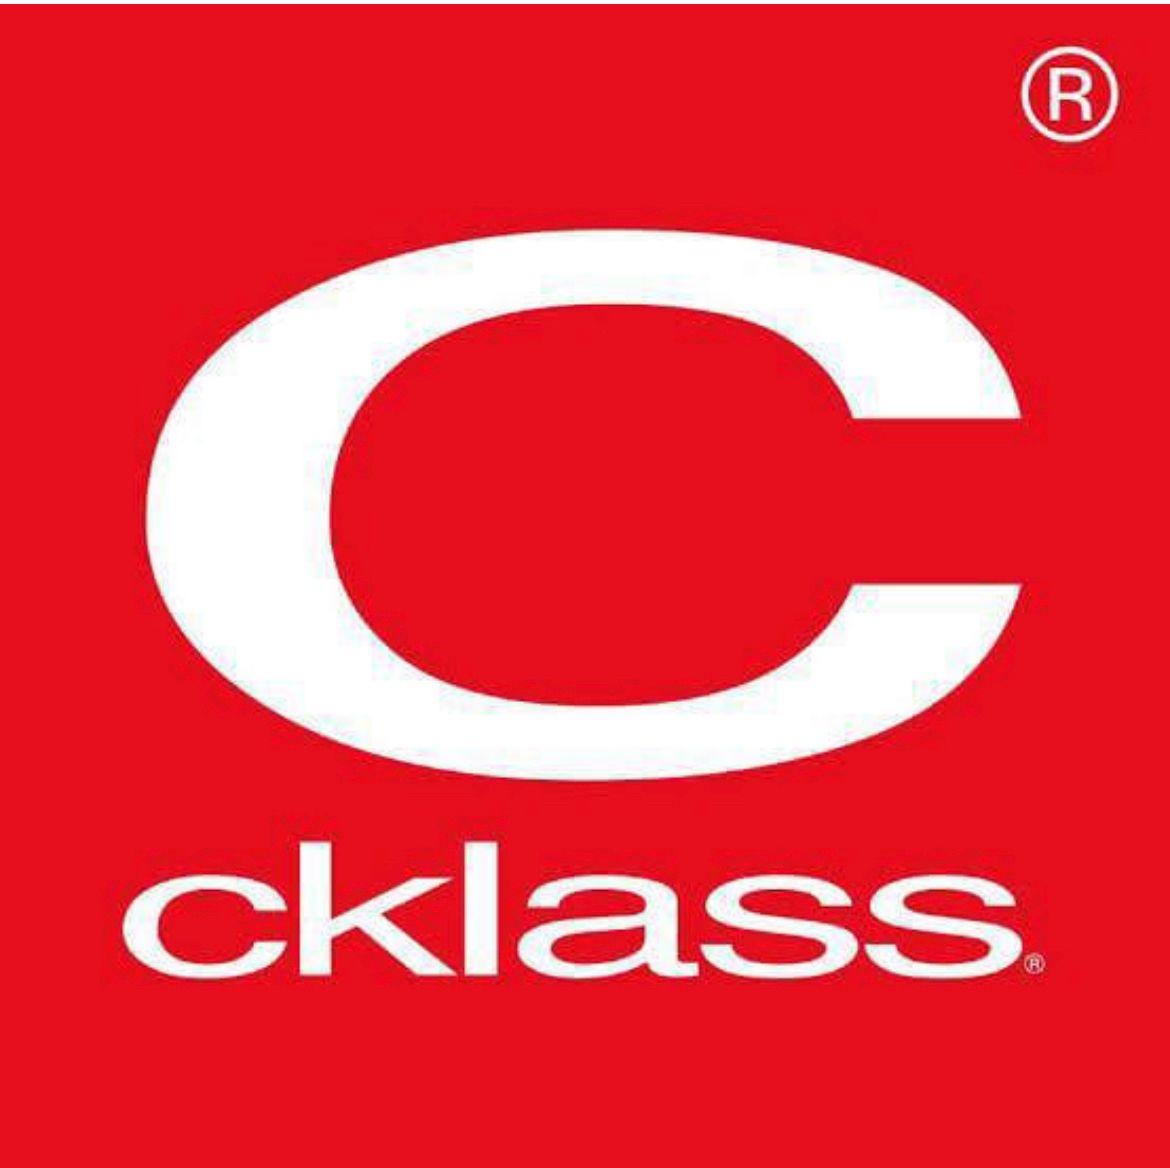 CKLASS CHECK LIST SUPERVISOR COMPRAS CORPORATIVAS